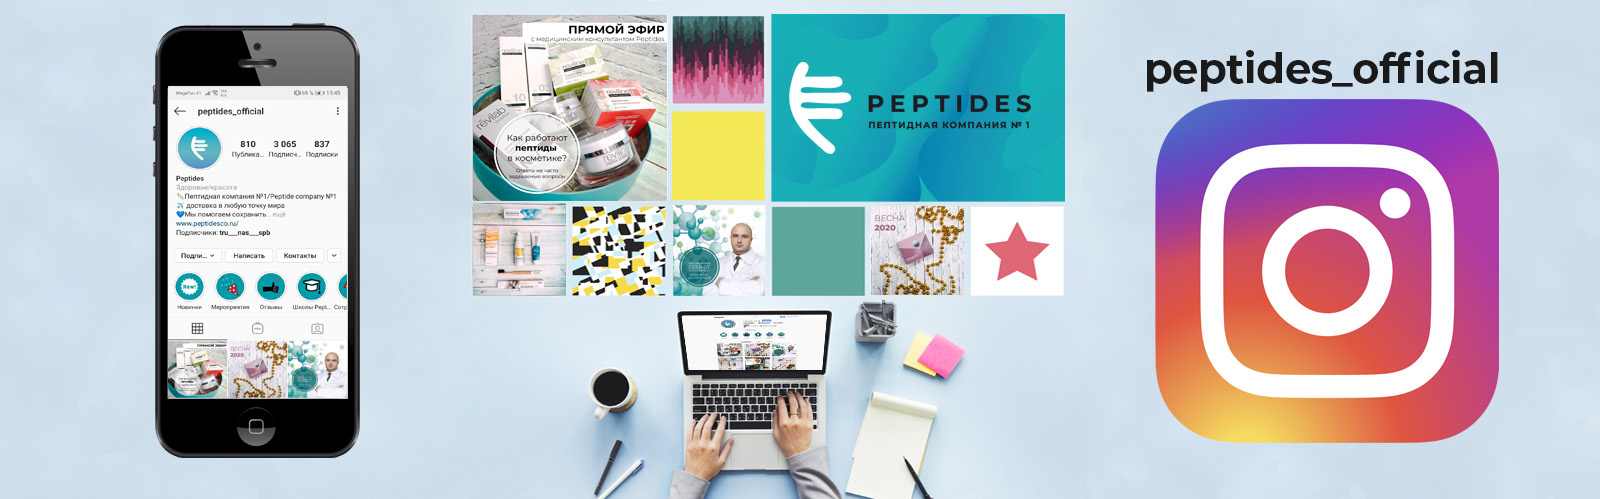 Онлайн-мероприятия Peptides